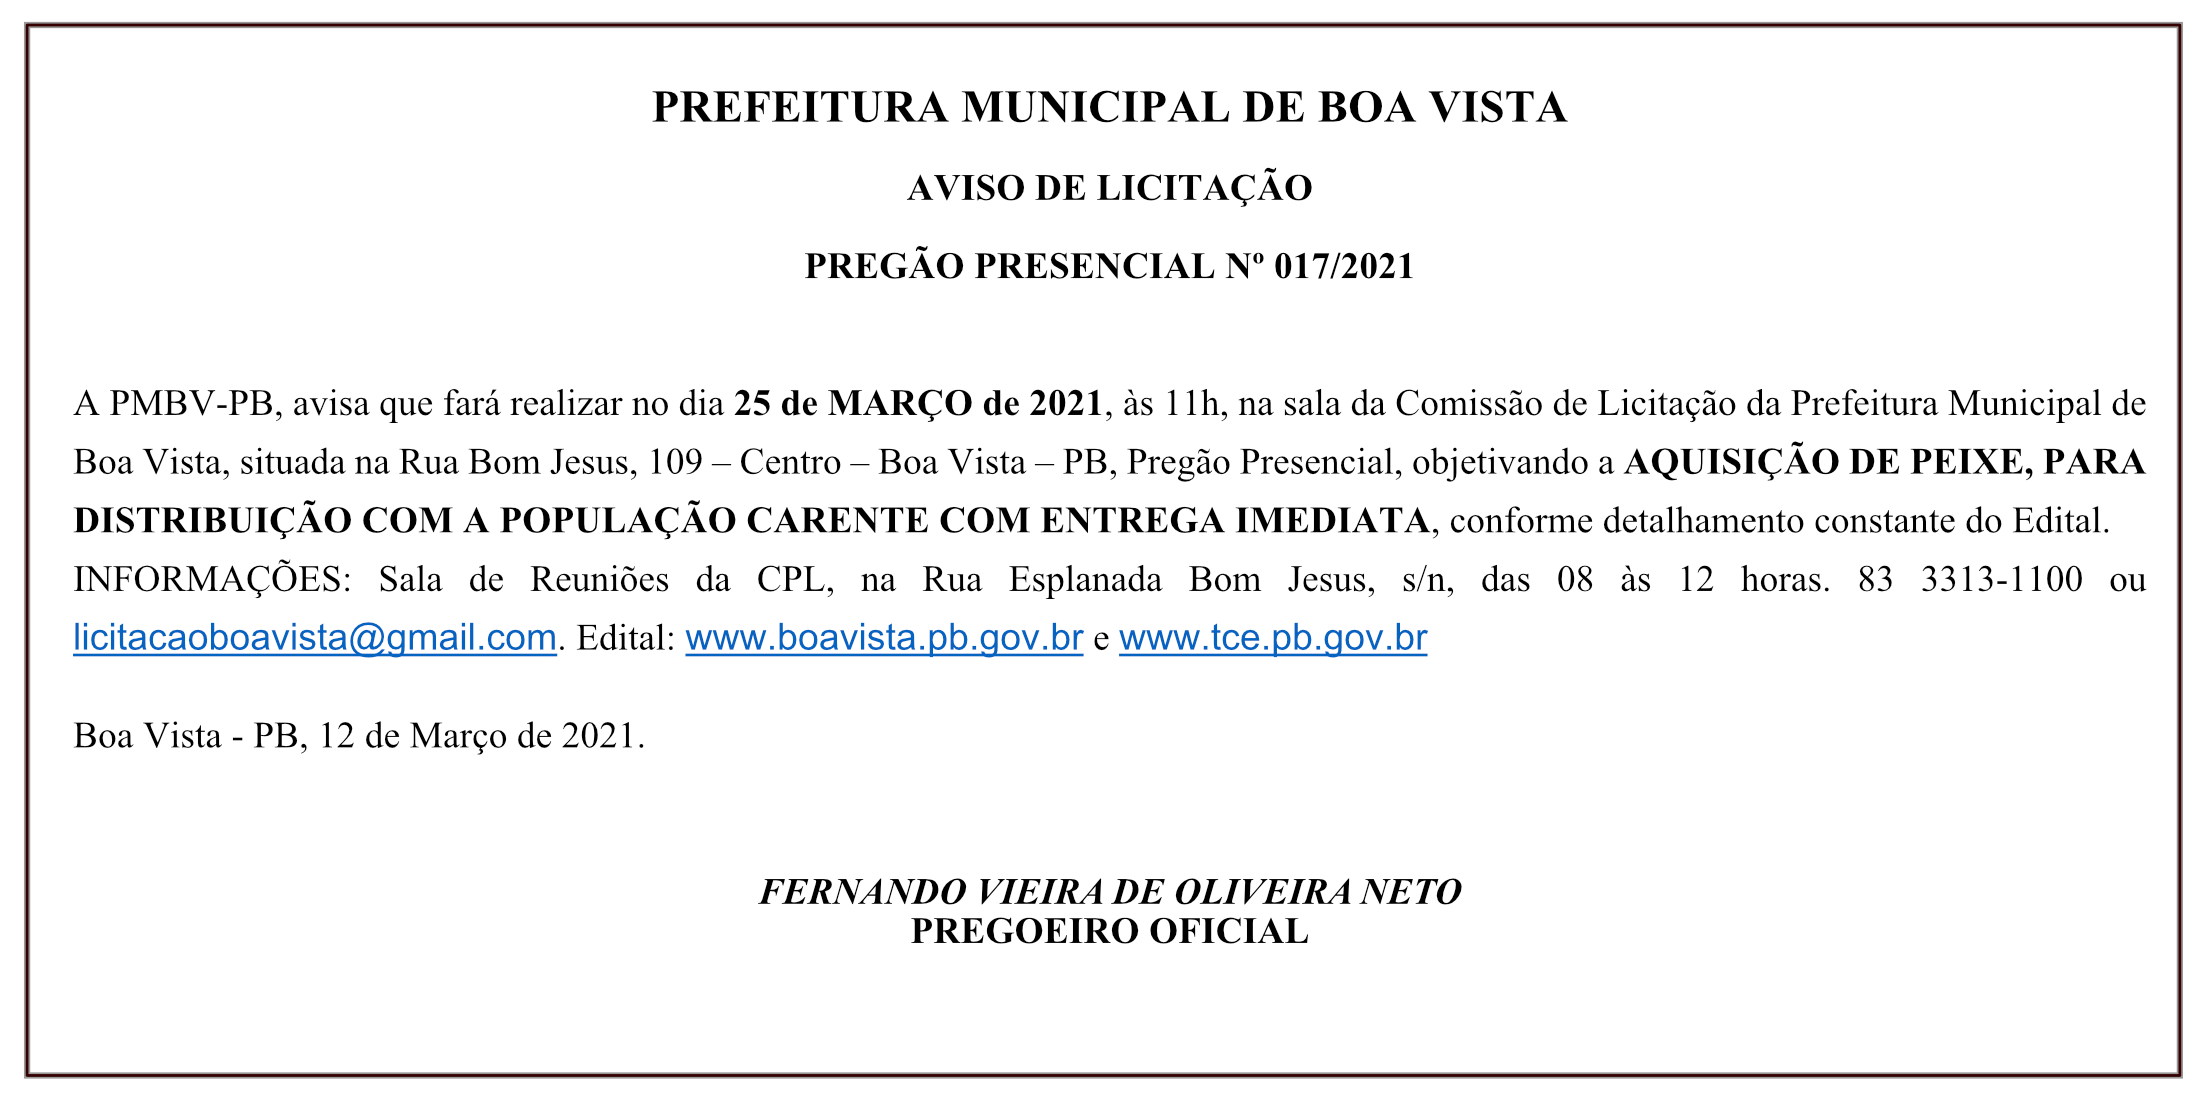 PREFEITURA MUNICIPAL DE BOA VISTA – AVISO DE LICITAÇÃO – PREGÃO PRESENCIAL Nº 017/2021